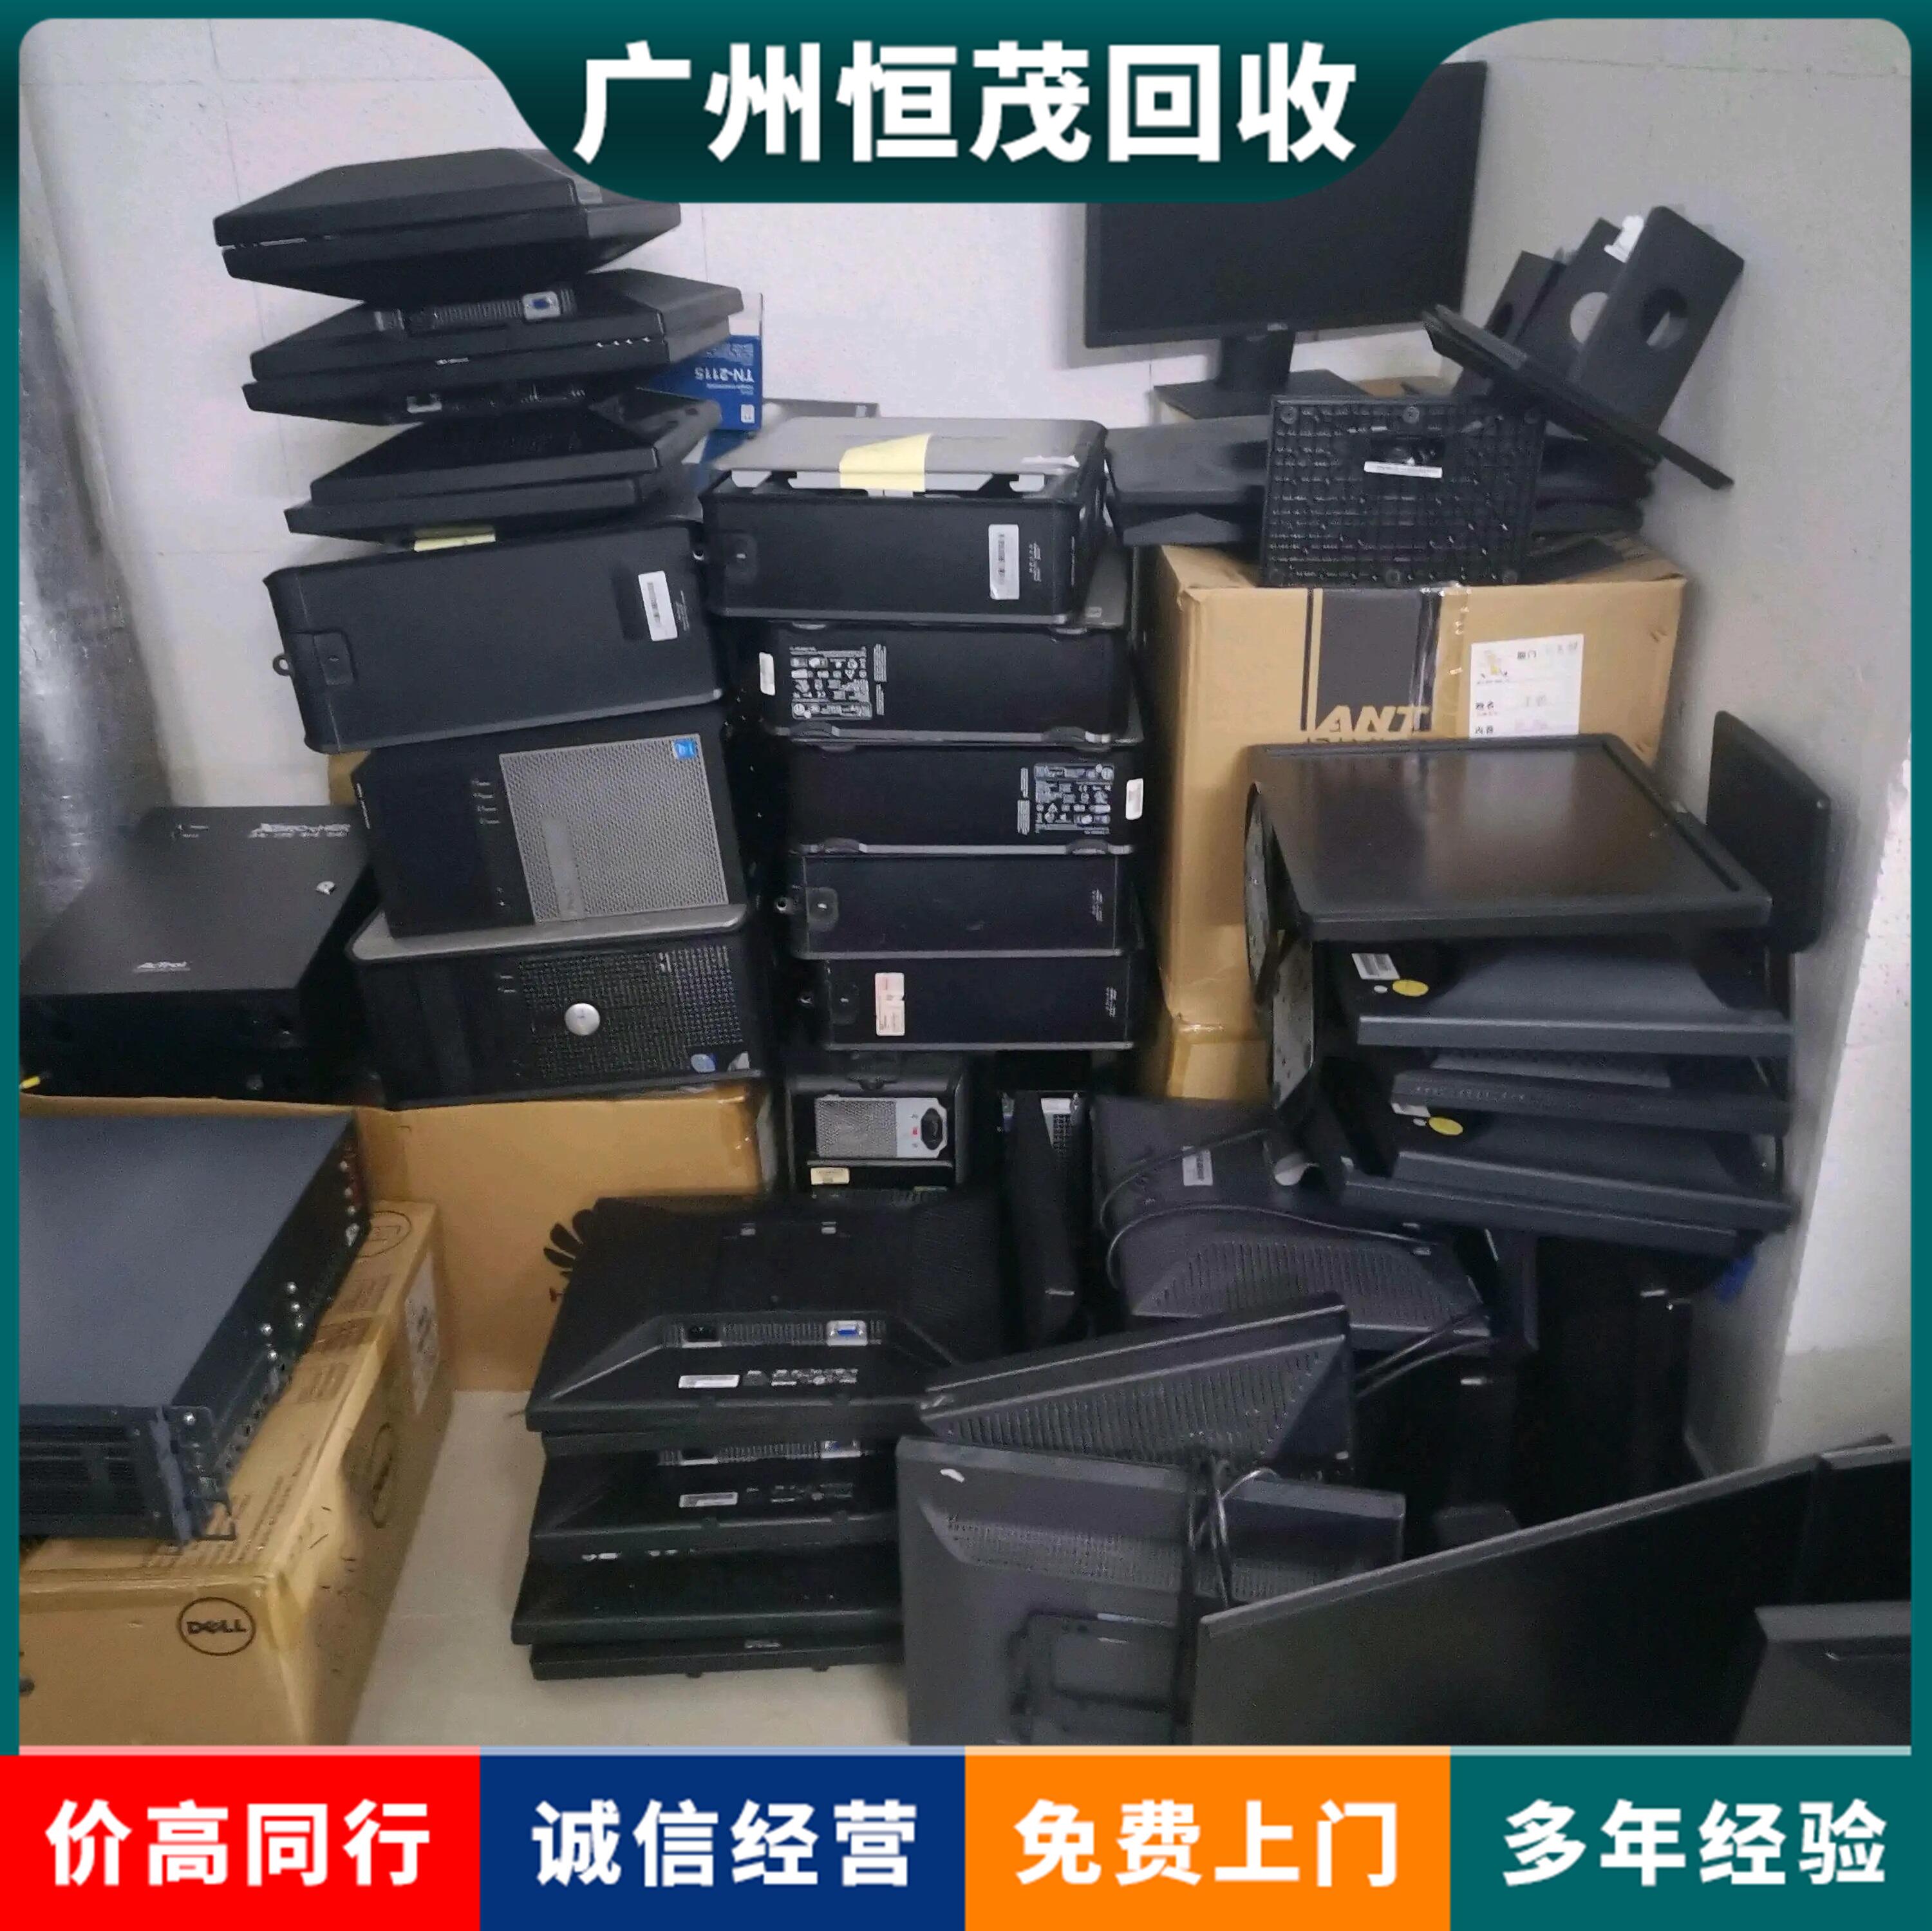 二手办公设备回收,广州白云区公司仓库旧物资清理6G内存内存条